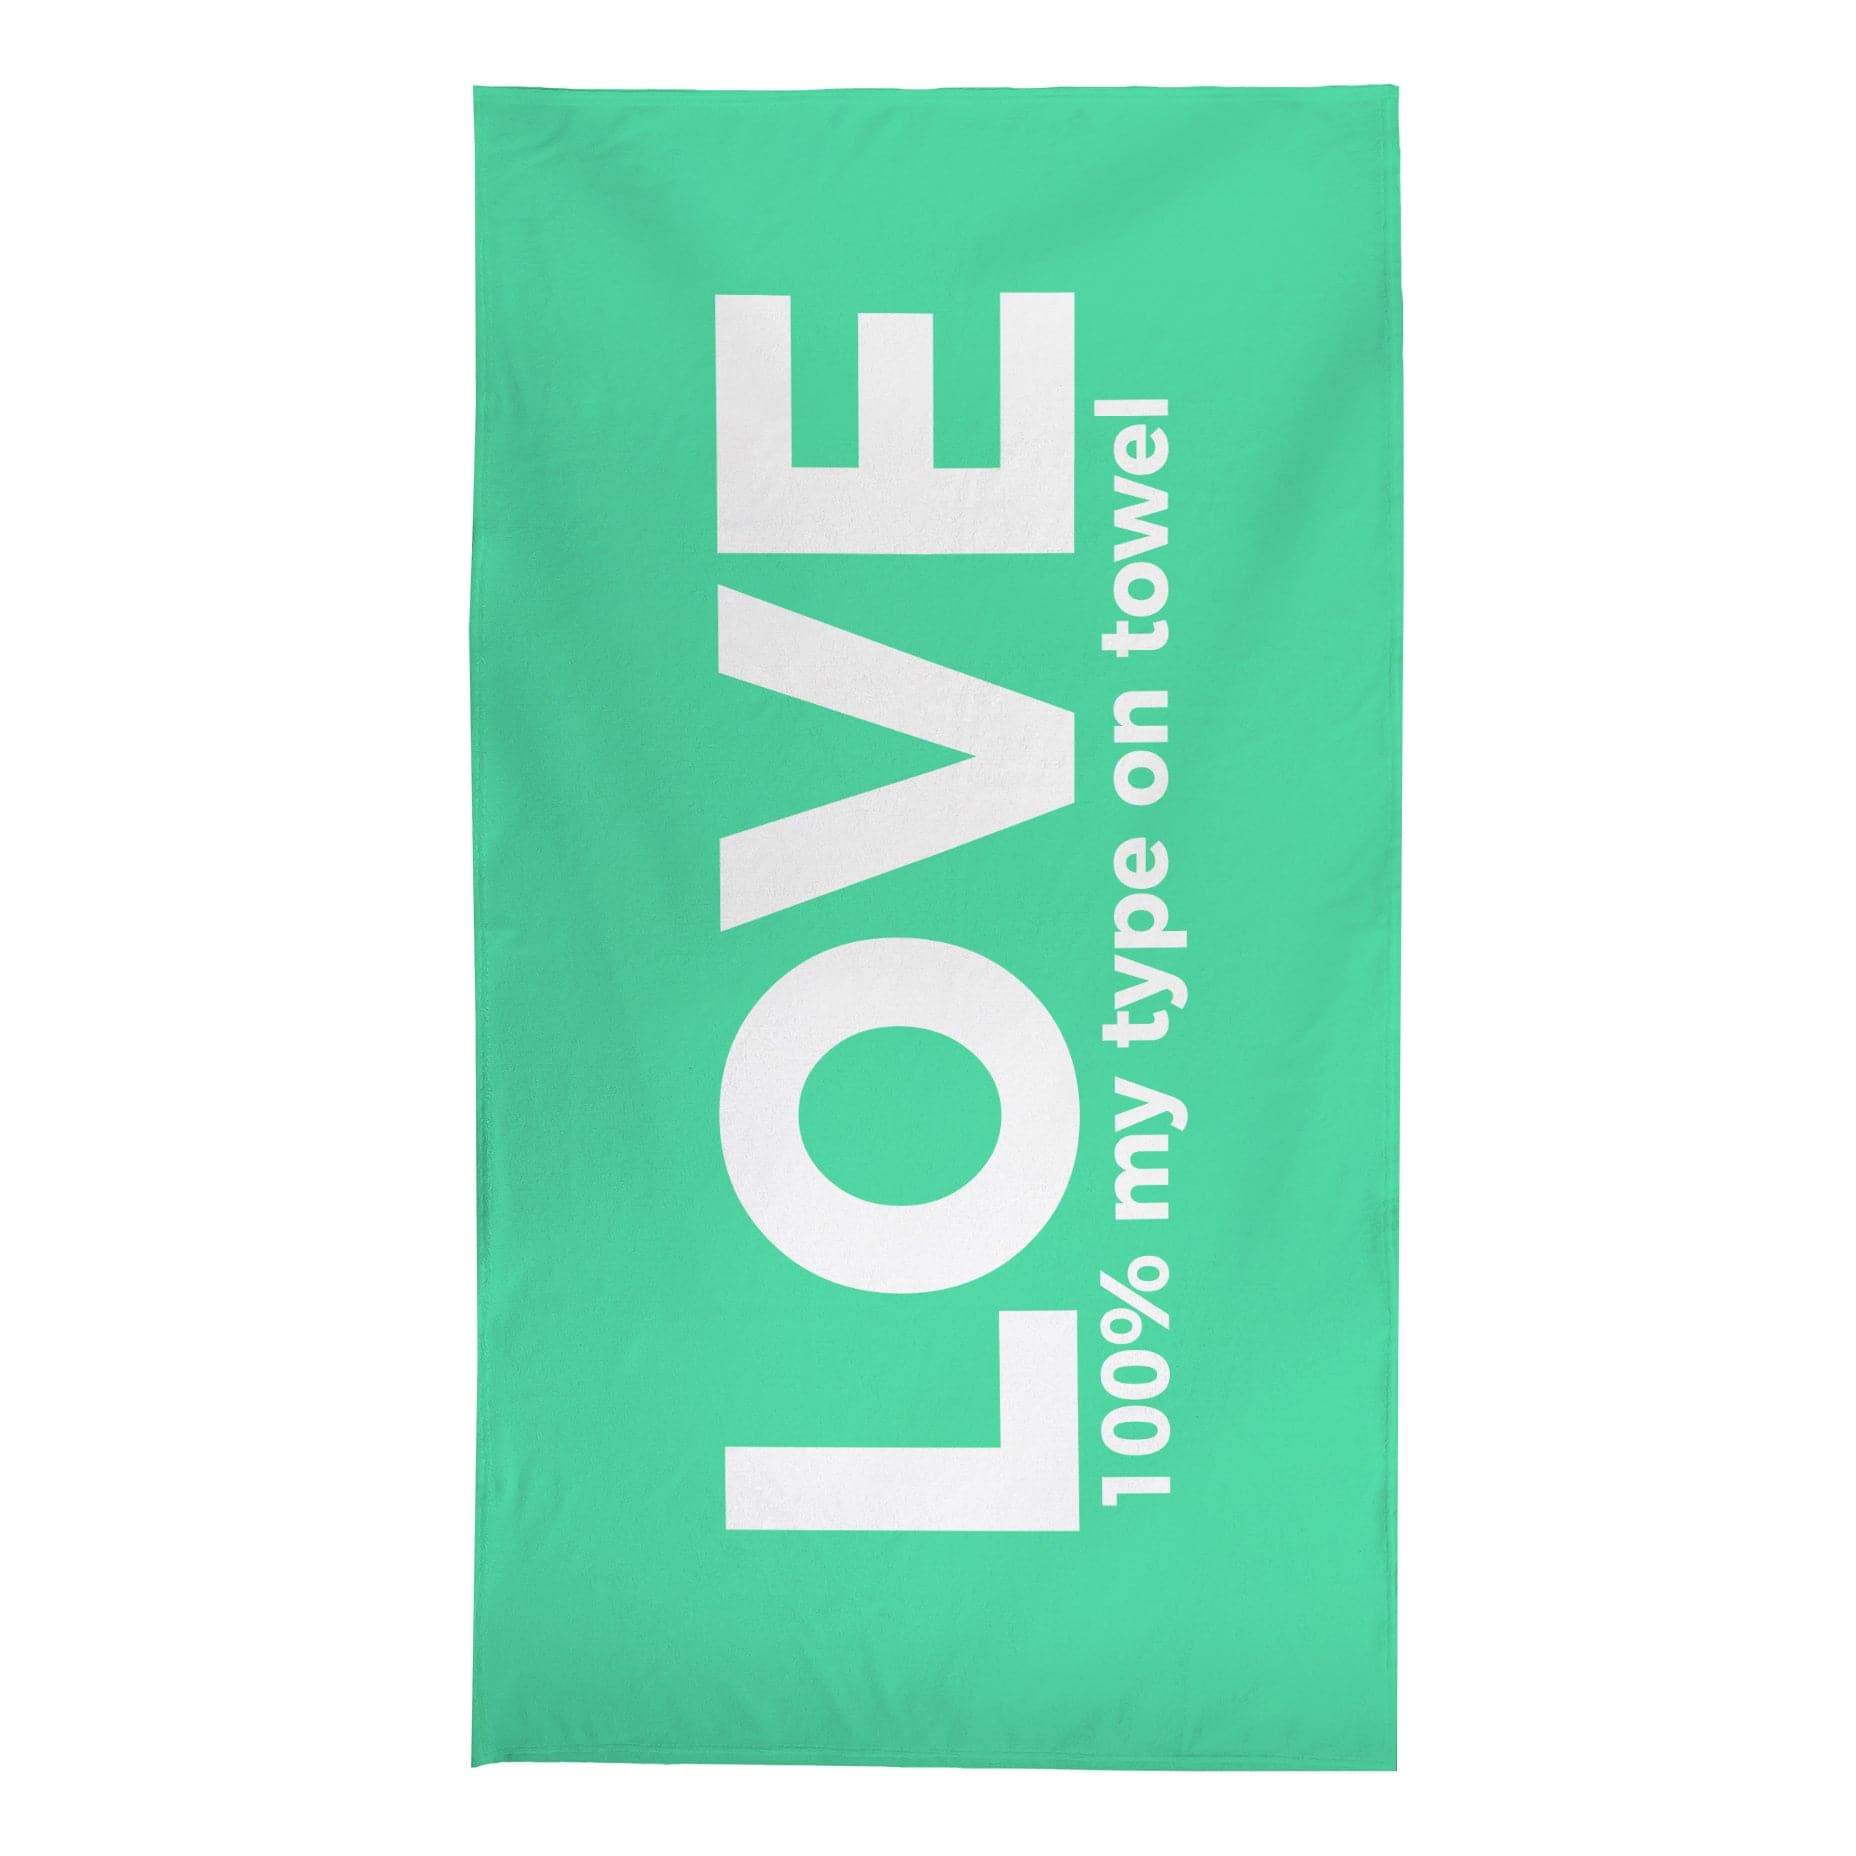 Personalised Beach Towel - Love Island Type On Towel Inspired